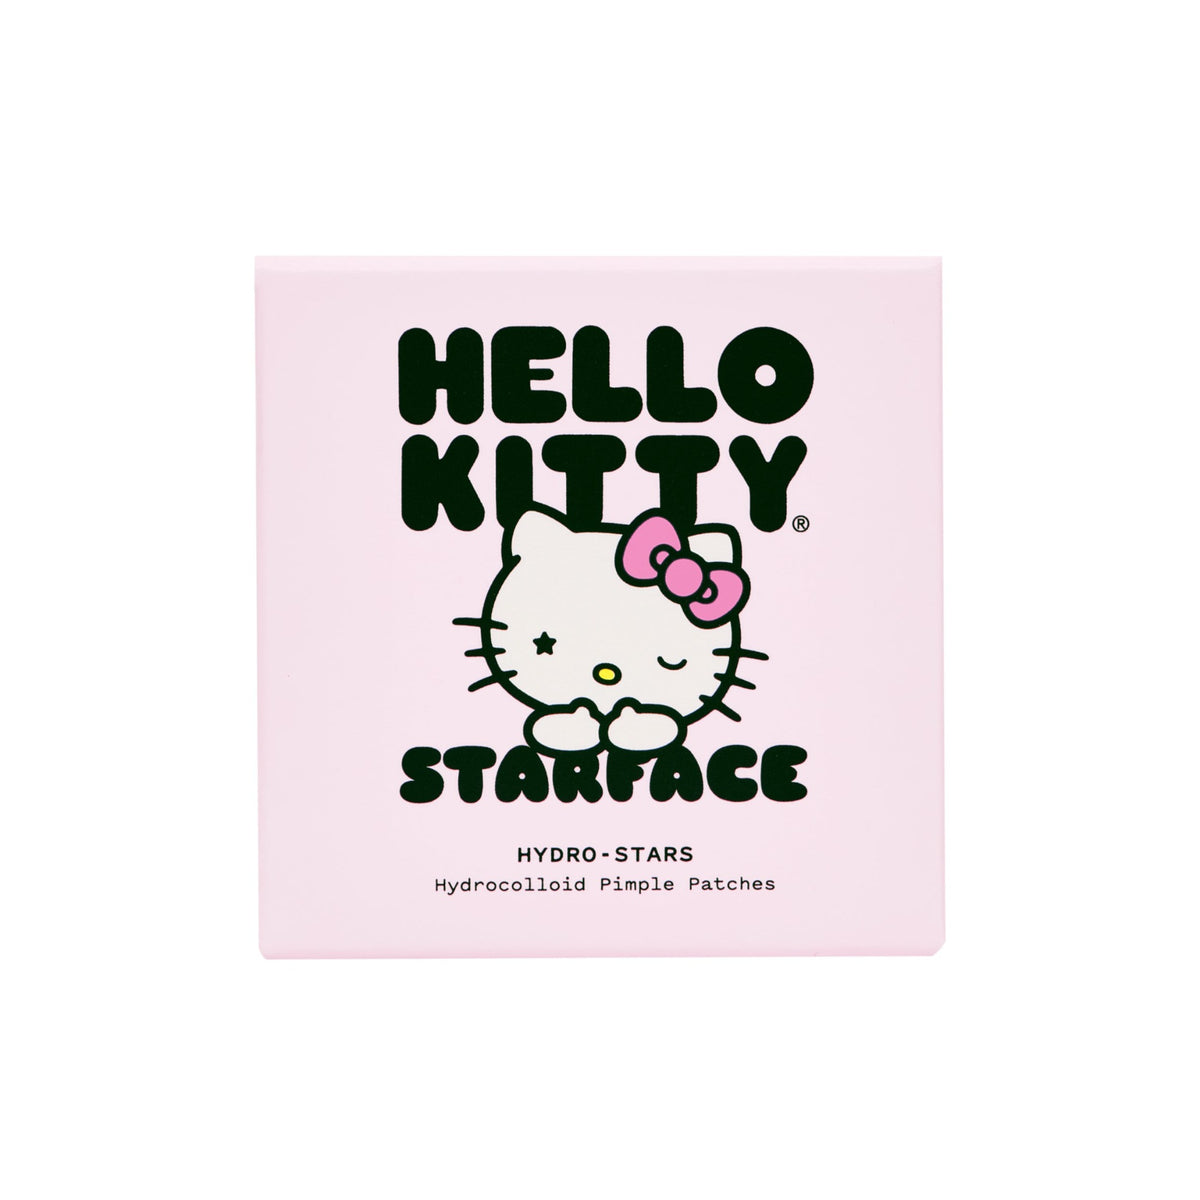 Hello Kitty x Starface Hydro-Stars Compact (32 ct) Beauty Starface World Inc.   